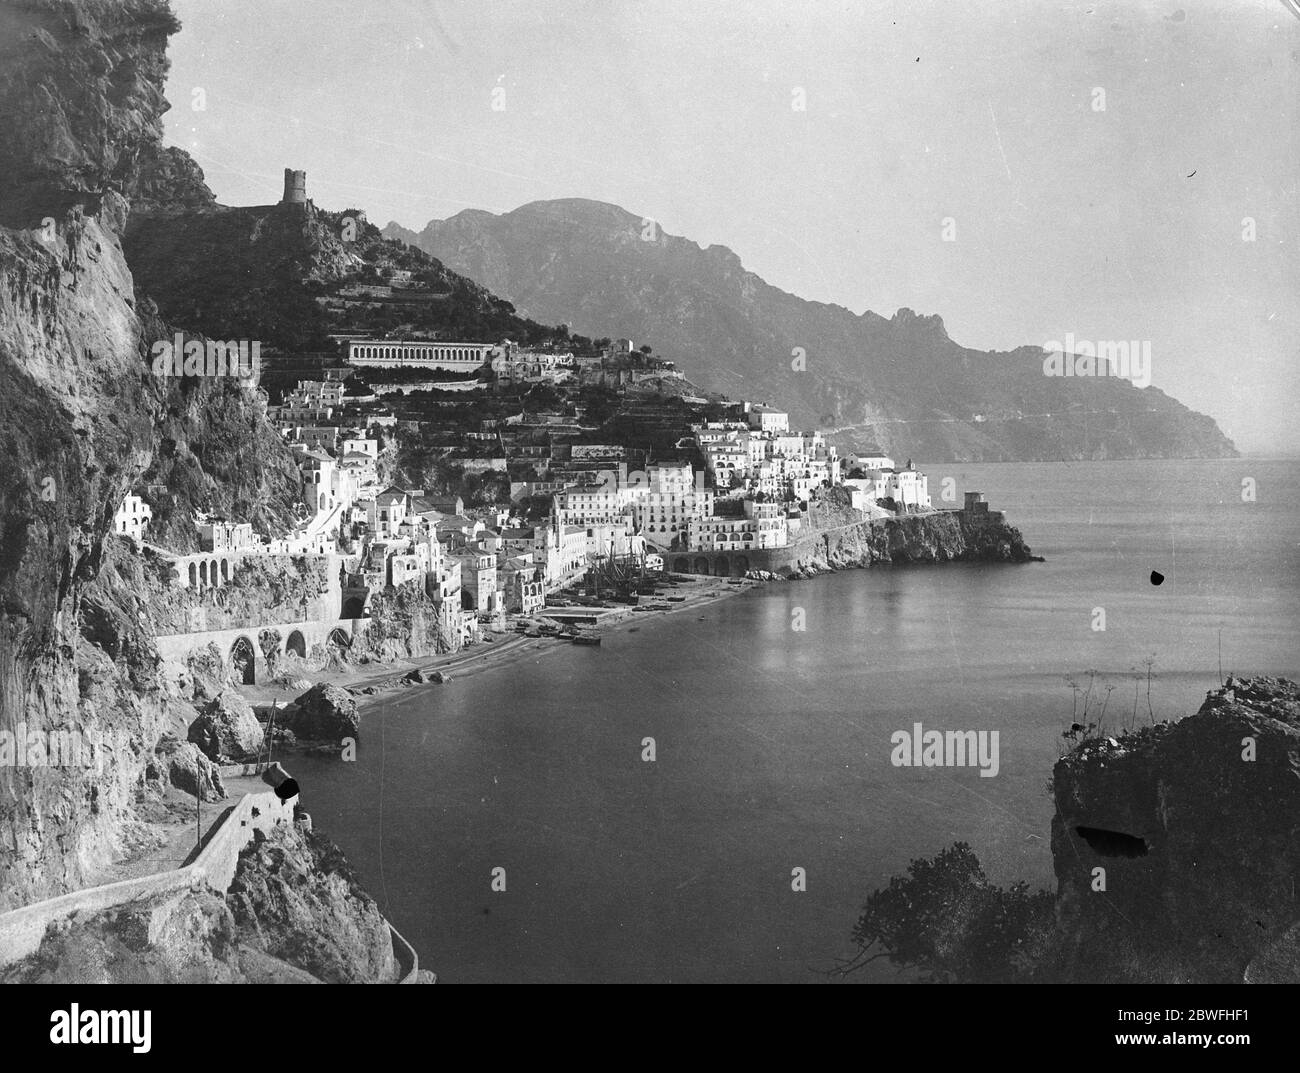 Szene der italienischen Erdrutsch . Amalfi, der italienische Schönheitsort, wurde teilweise durch einen Erdrutsch zerstört. Ein allgemeiner Blick auf Amalfi. 28 März 1924 Stockfoto